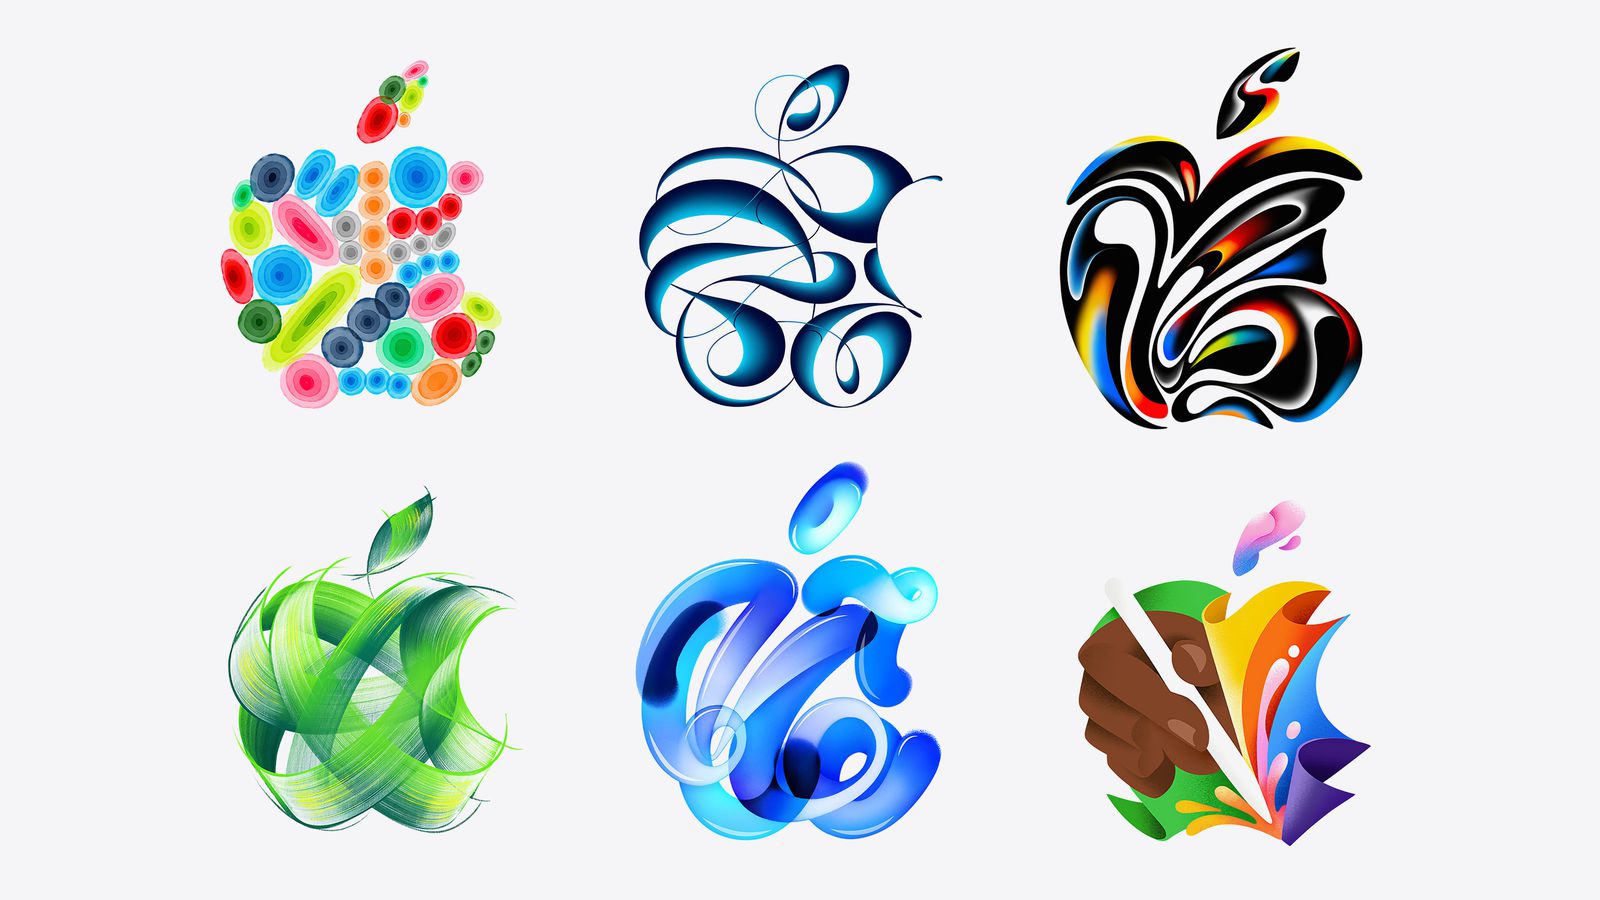 Do iPhoneIslam.com, seis designs abstratos em cores brilhantes e formas fluidas, incluindo uma coleção de esferas, formas em forma de fita e motivos de folhas influenciados por notícias marginais.